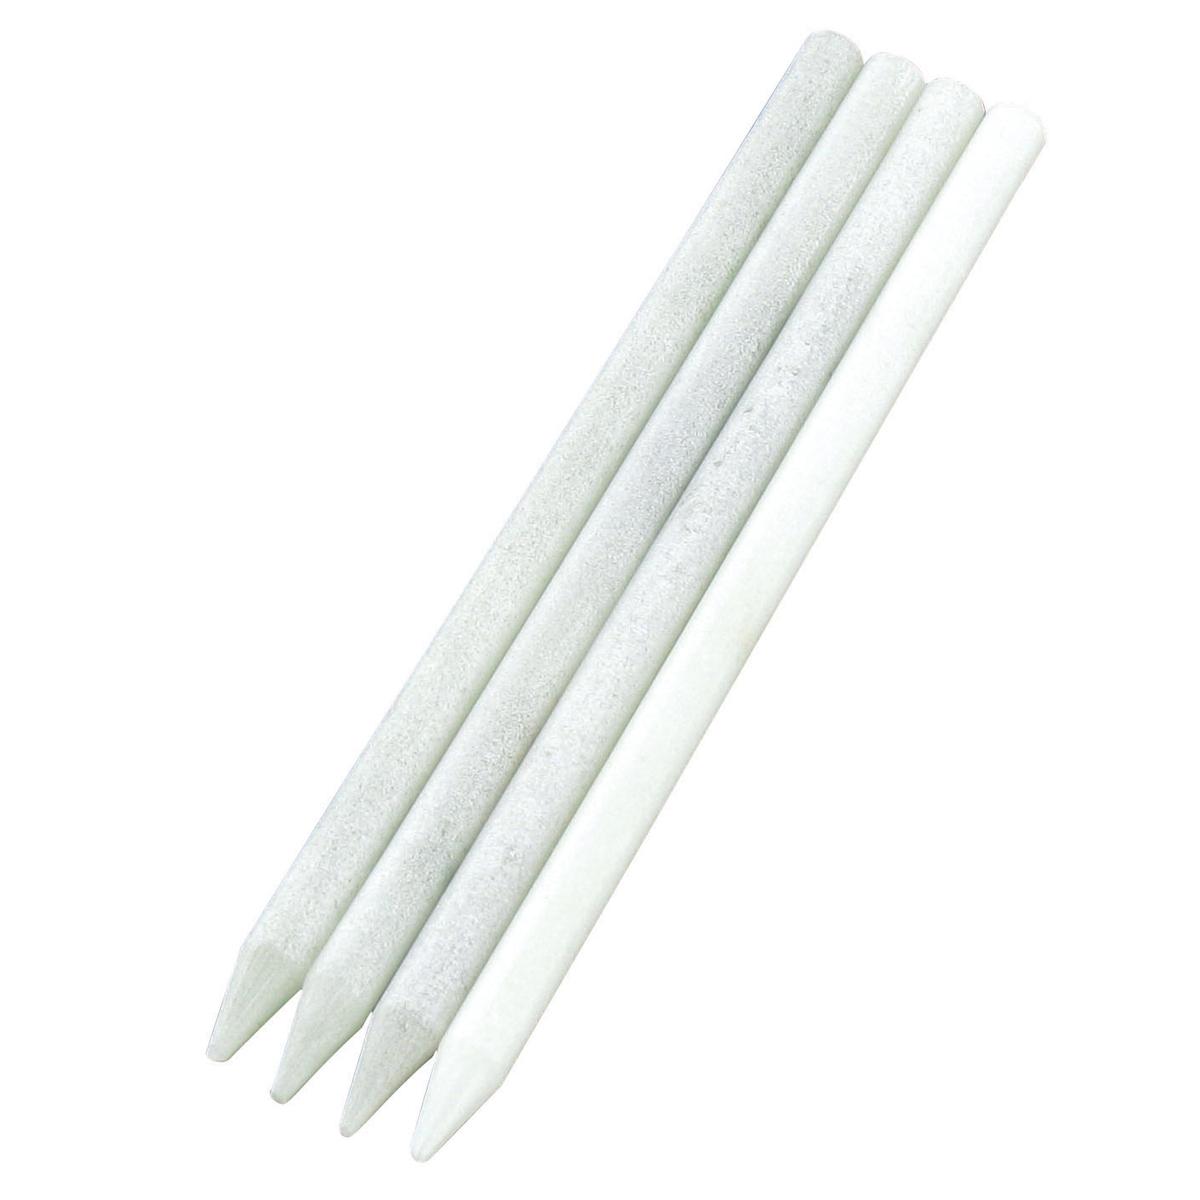 Crayons craie blanche 12,5 x 0,6 cm x 4 pcs